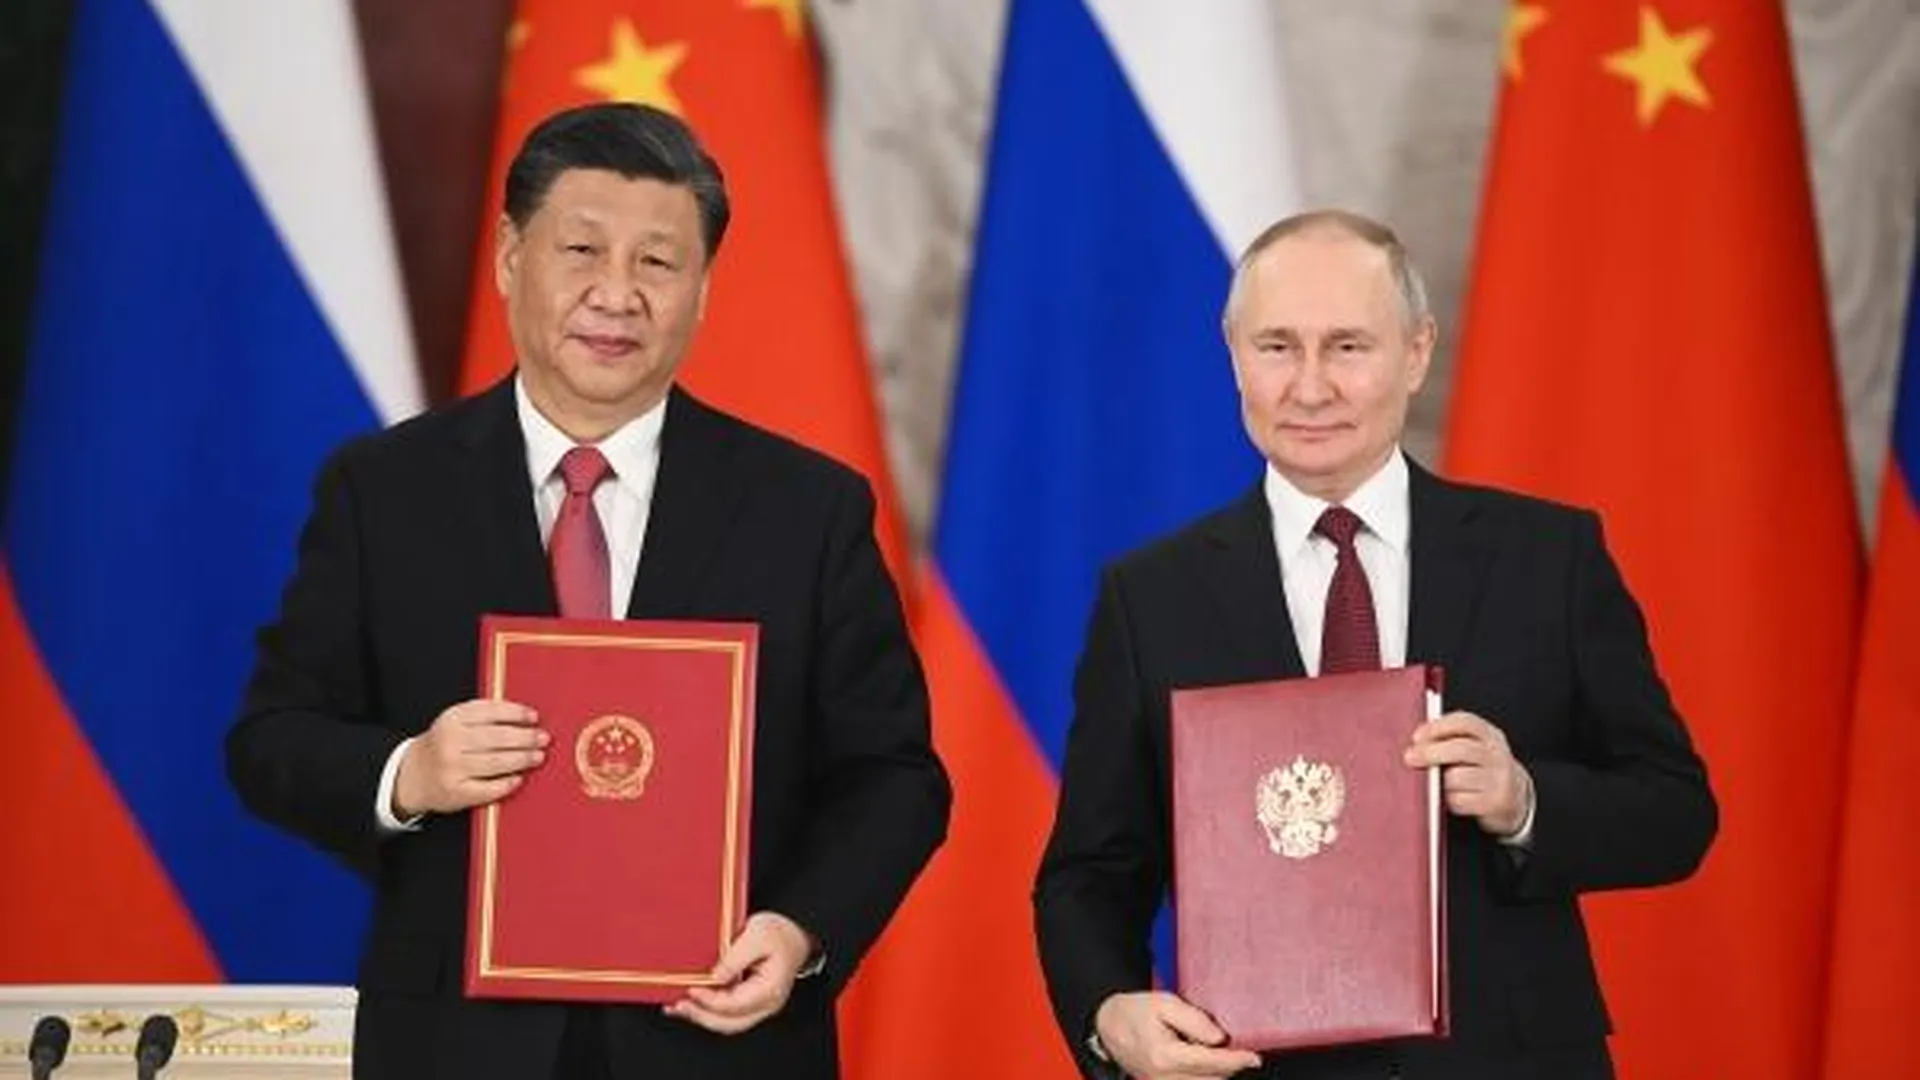 Владимир Путин и Си Цзиньпин на церемонии подписания совместных документов об углублении отношений и направлениях сотрудничества до 2030 года